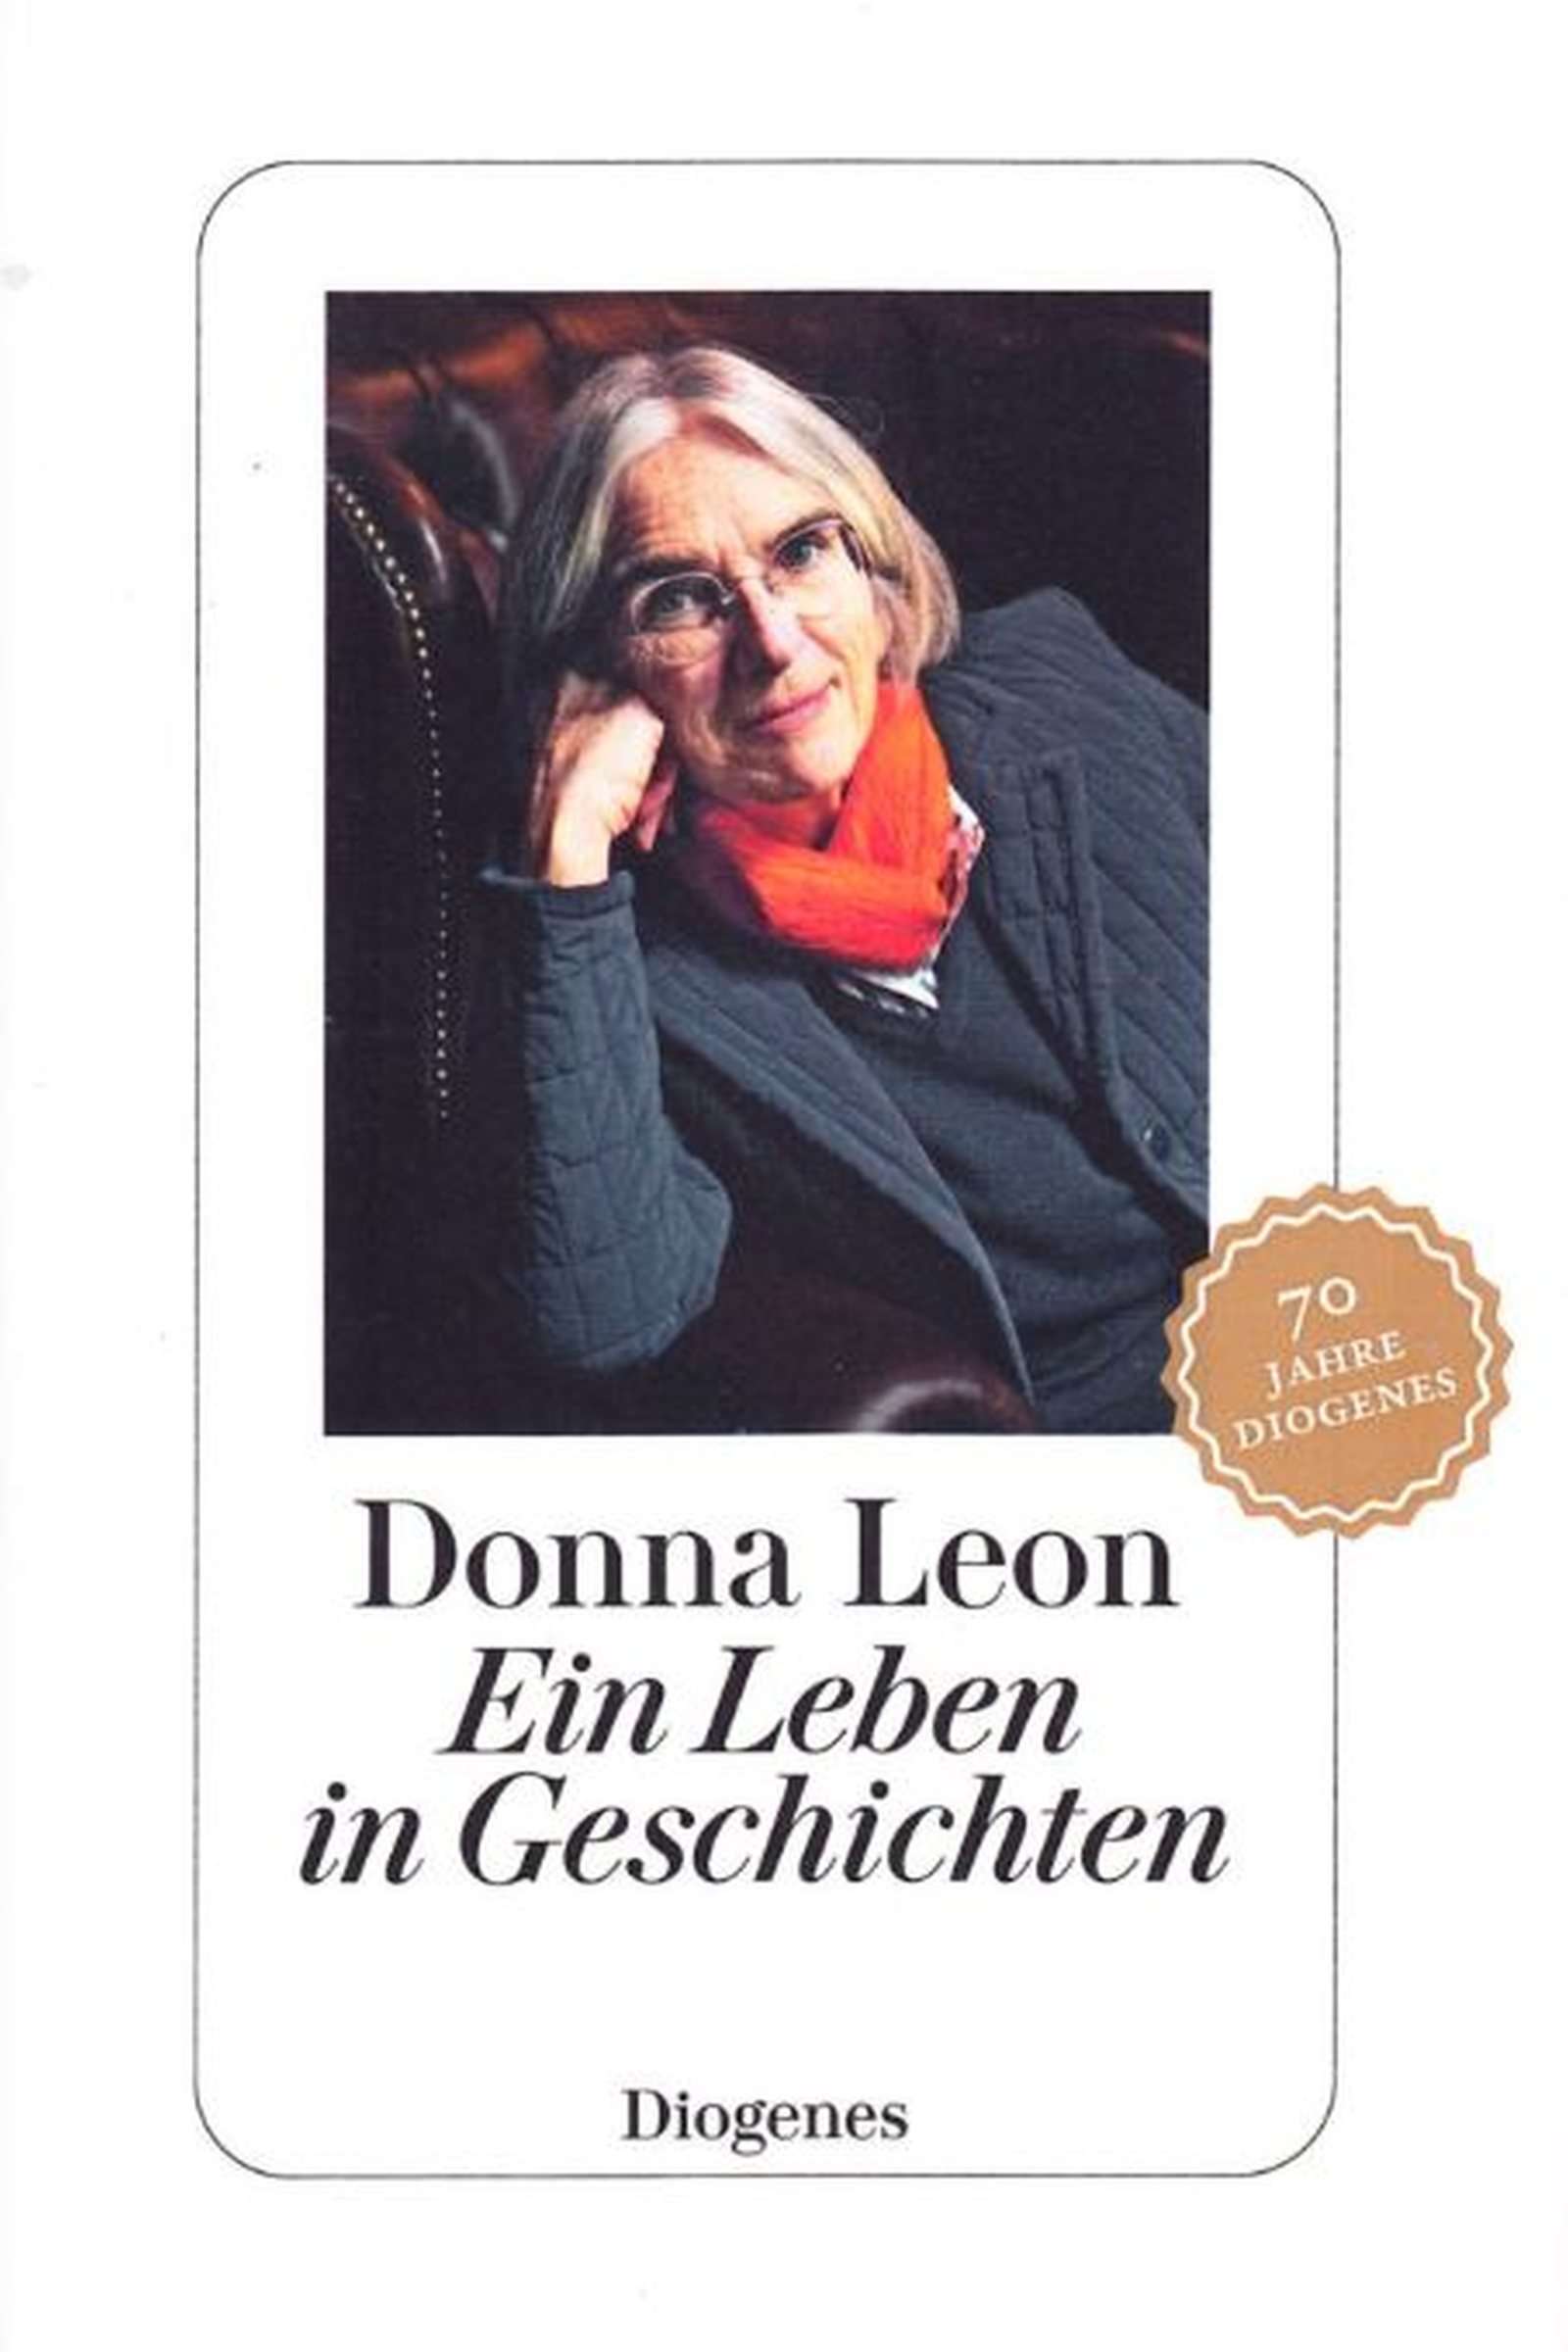 You are currently viewing Donna Leon – Ein Leben in Geschichten